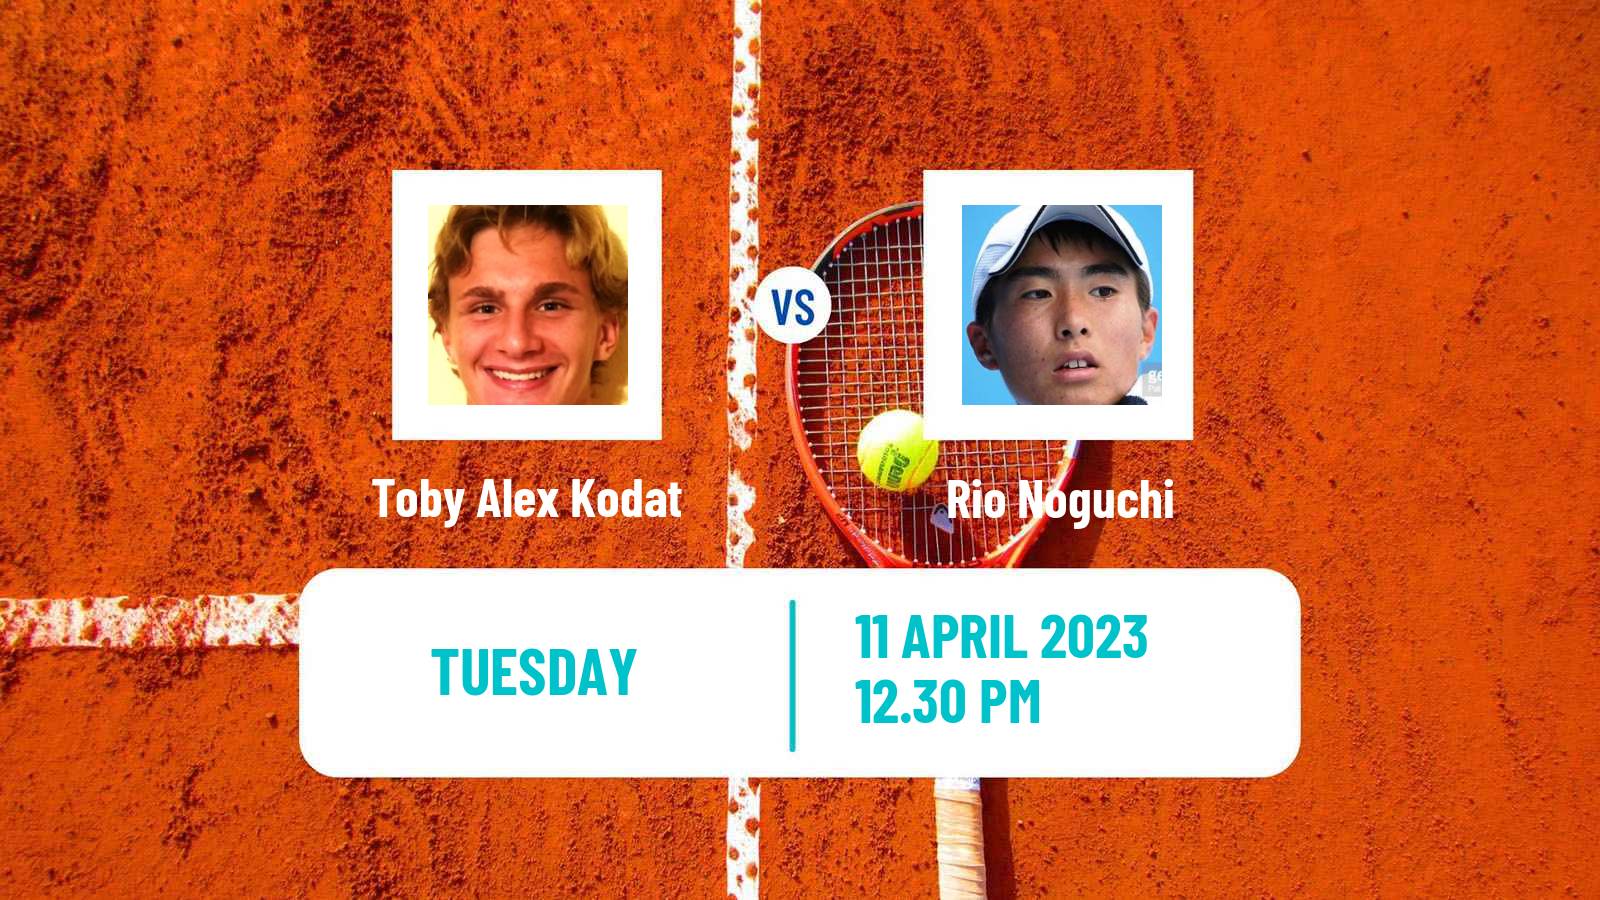 Tennis ATP Challenger Toby Alex Kodat - Rio Noguchi